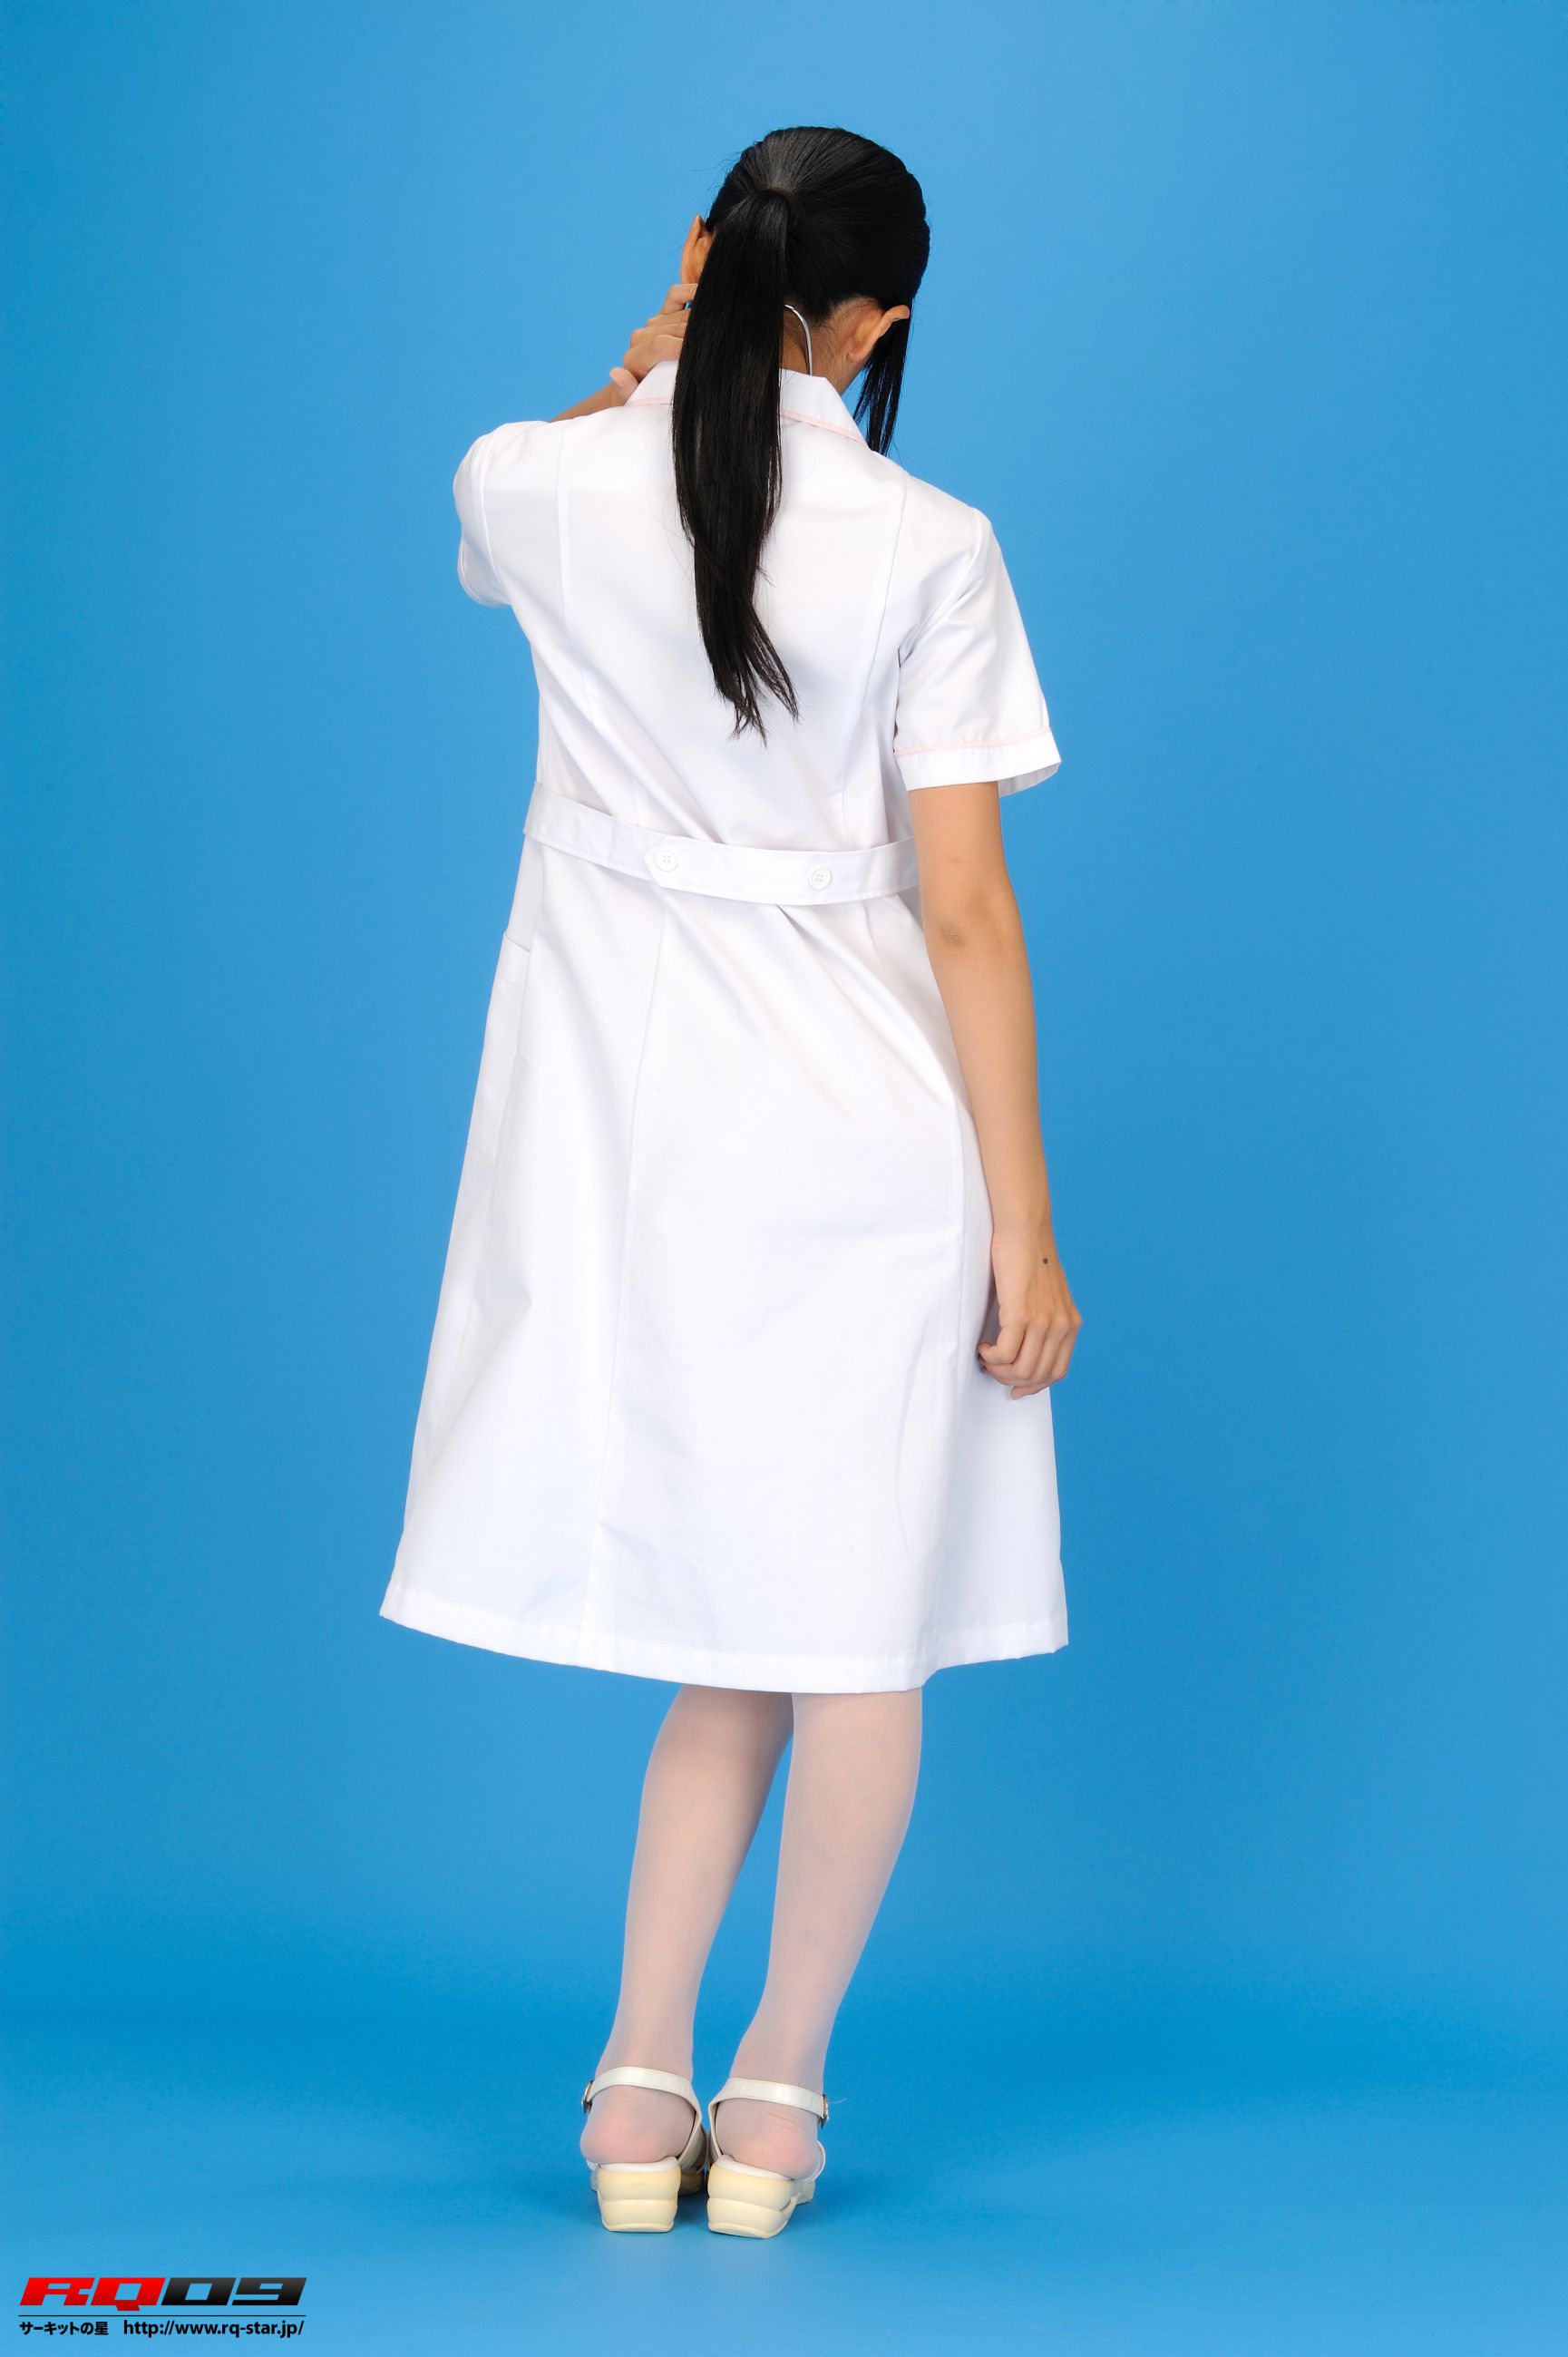 [RQ-STAR] NO.00216 Hiroko Yoshino White Nurse Page 48 No.74c3e4